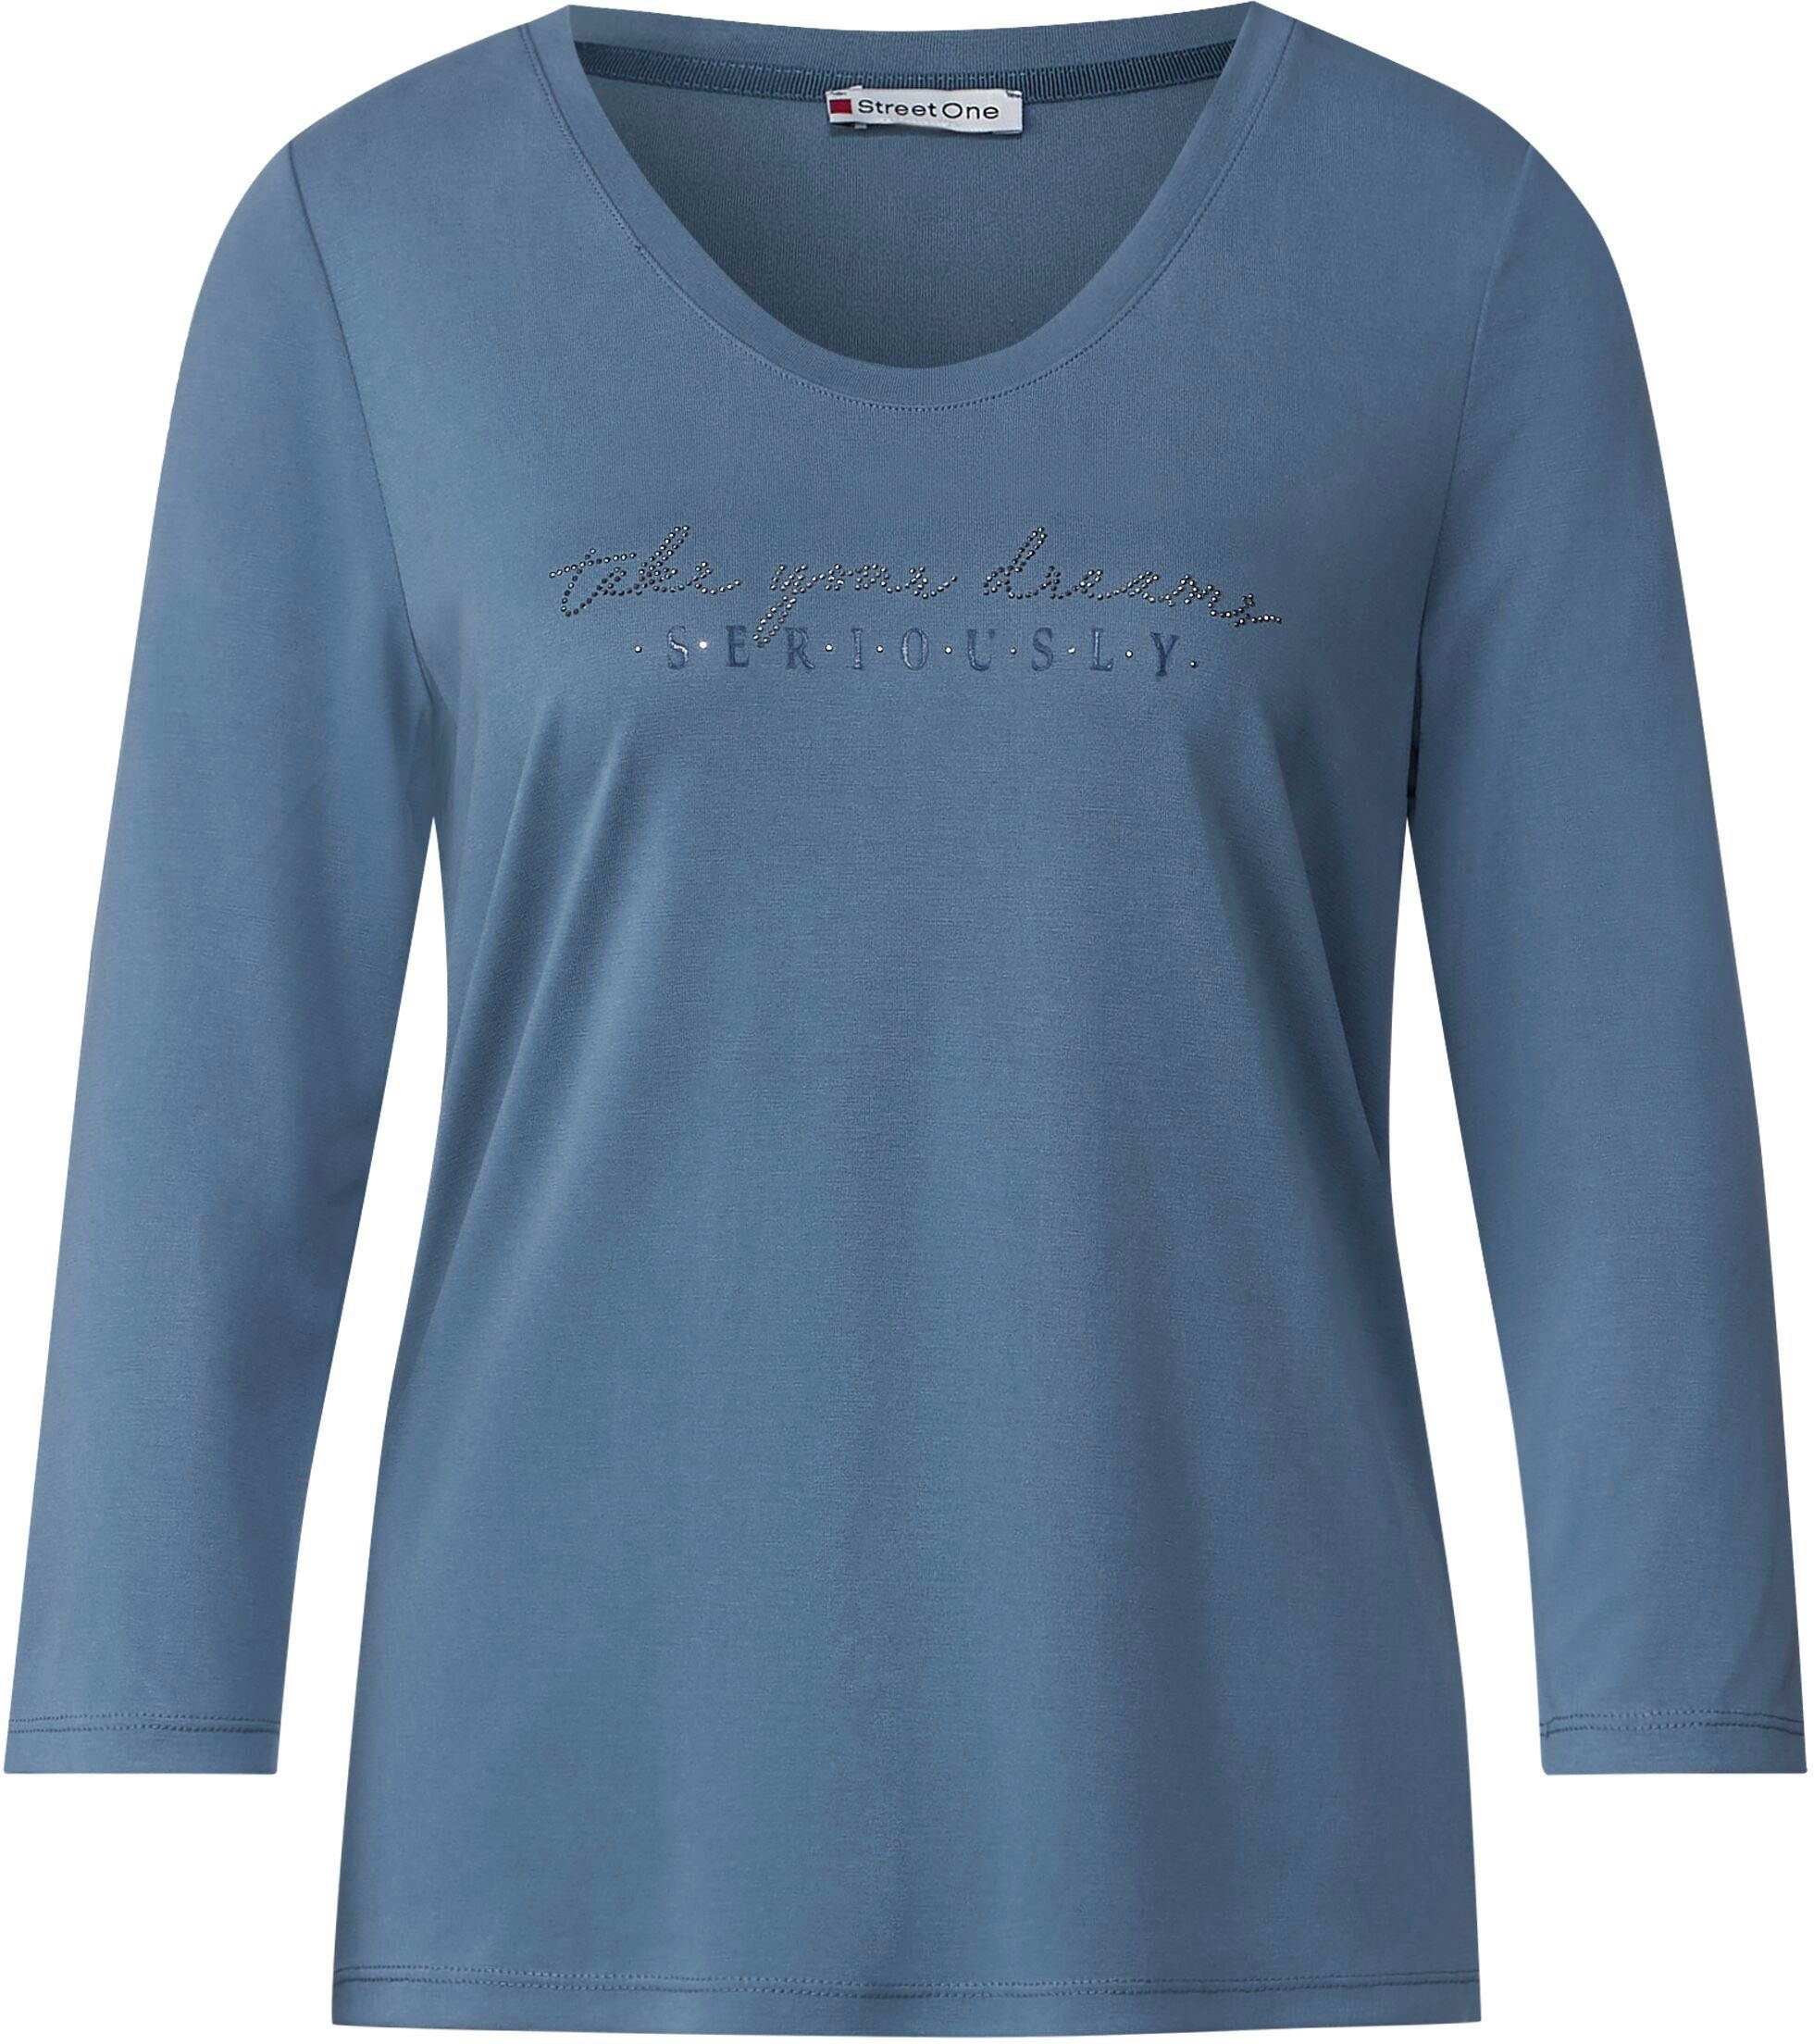 STREET 3/4-Arm-Shirt bay dark blue der mit ONE Brust Steinchen-Wording auf